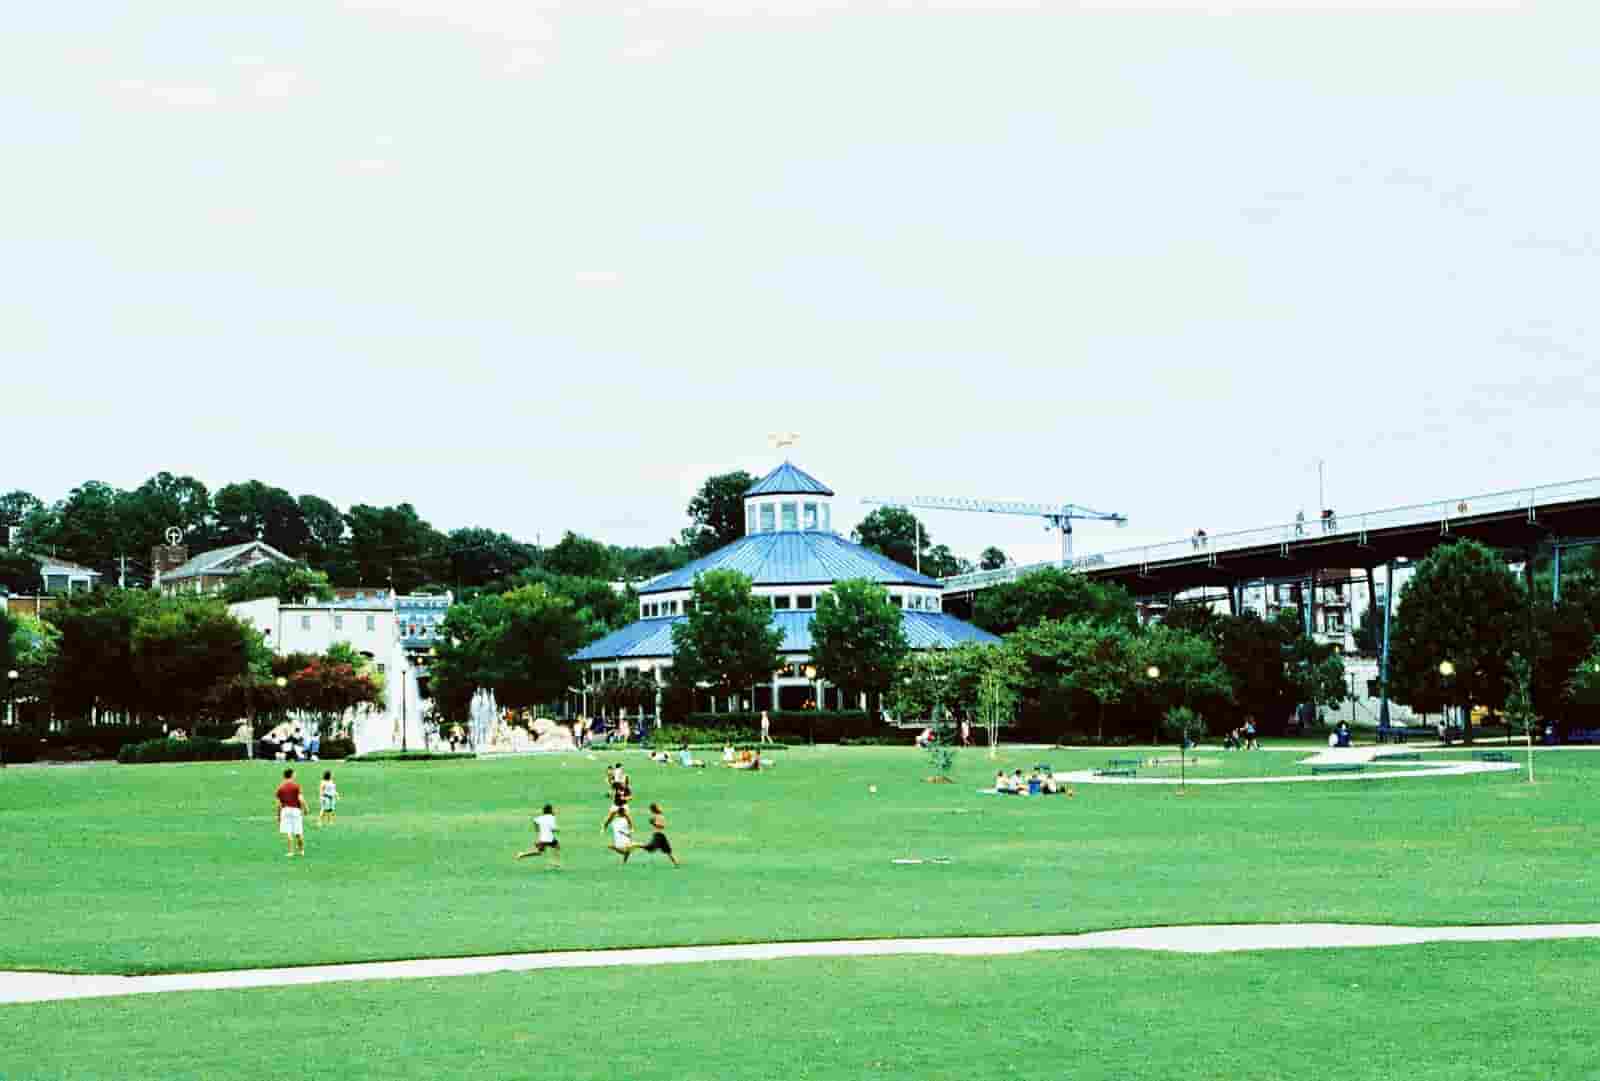 Coolidge Park